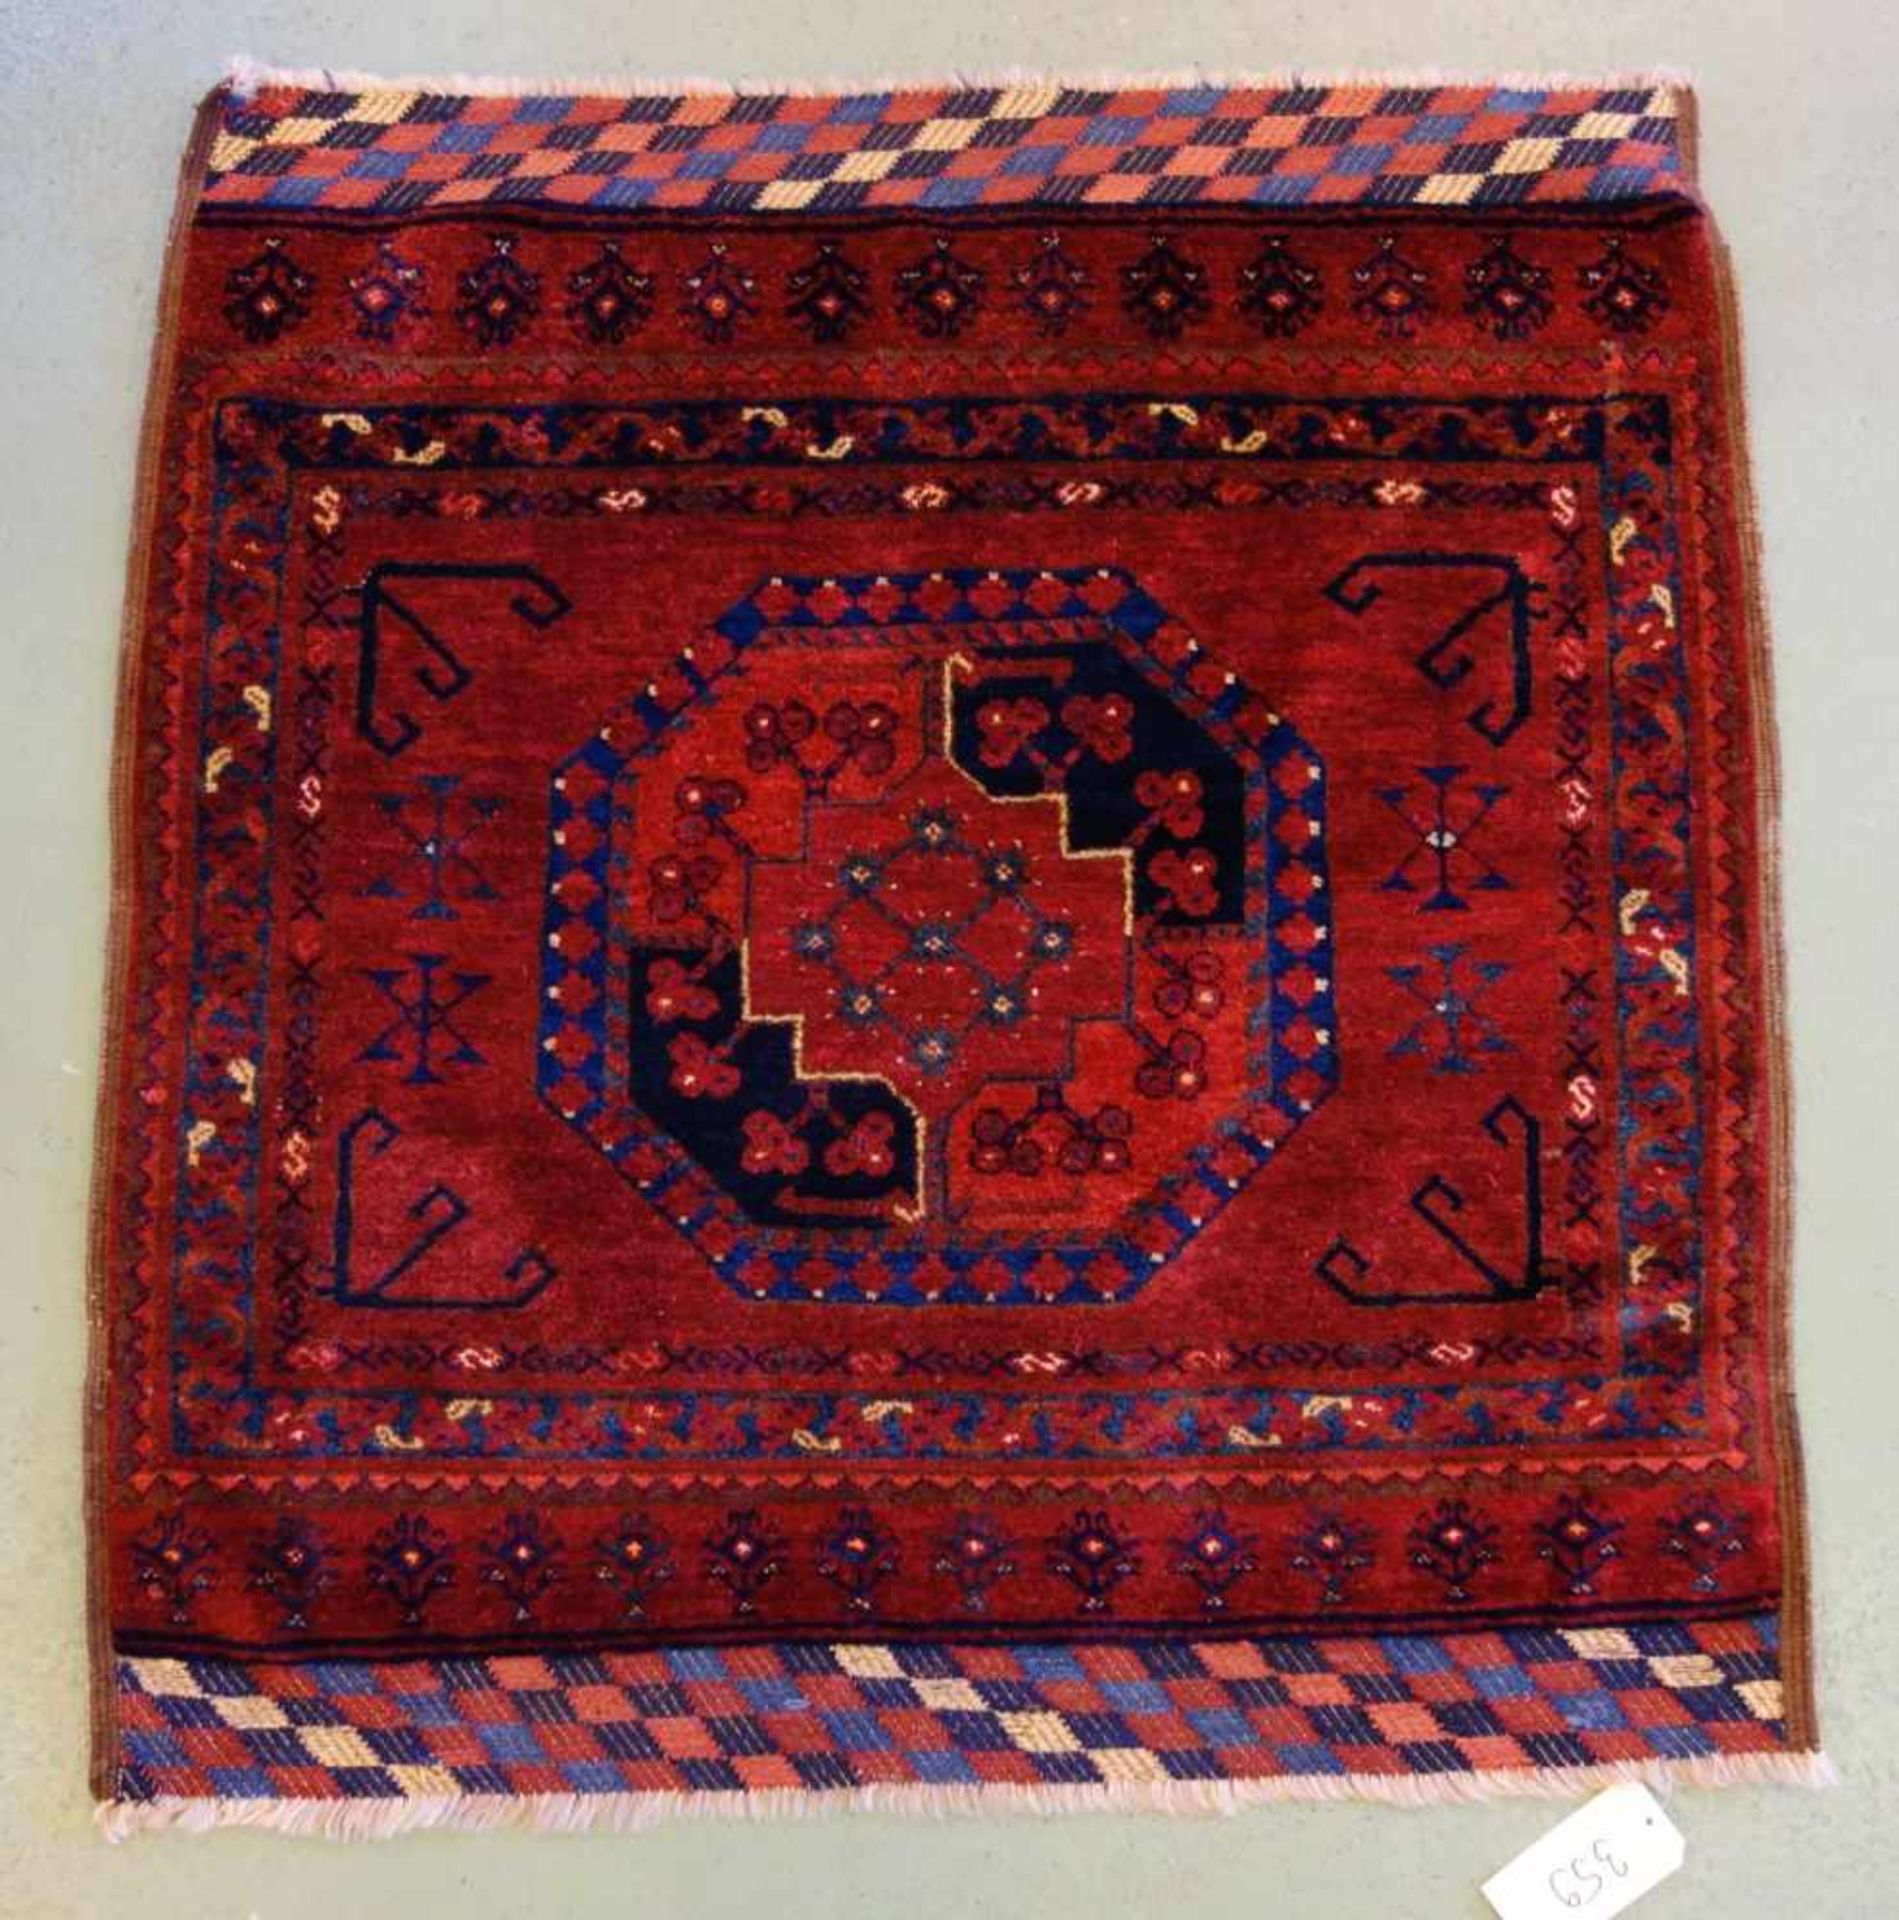 SELTENER KLEINER TEPPICH / ERSARI / carpet, Turkmenen / Westturkestan, wohl 2. H. 19. Jh., wohl